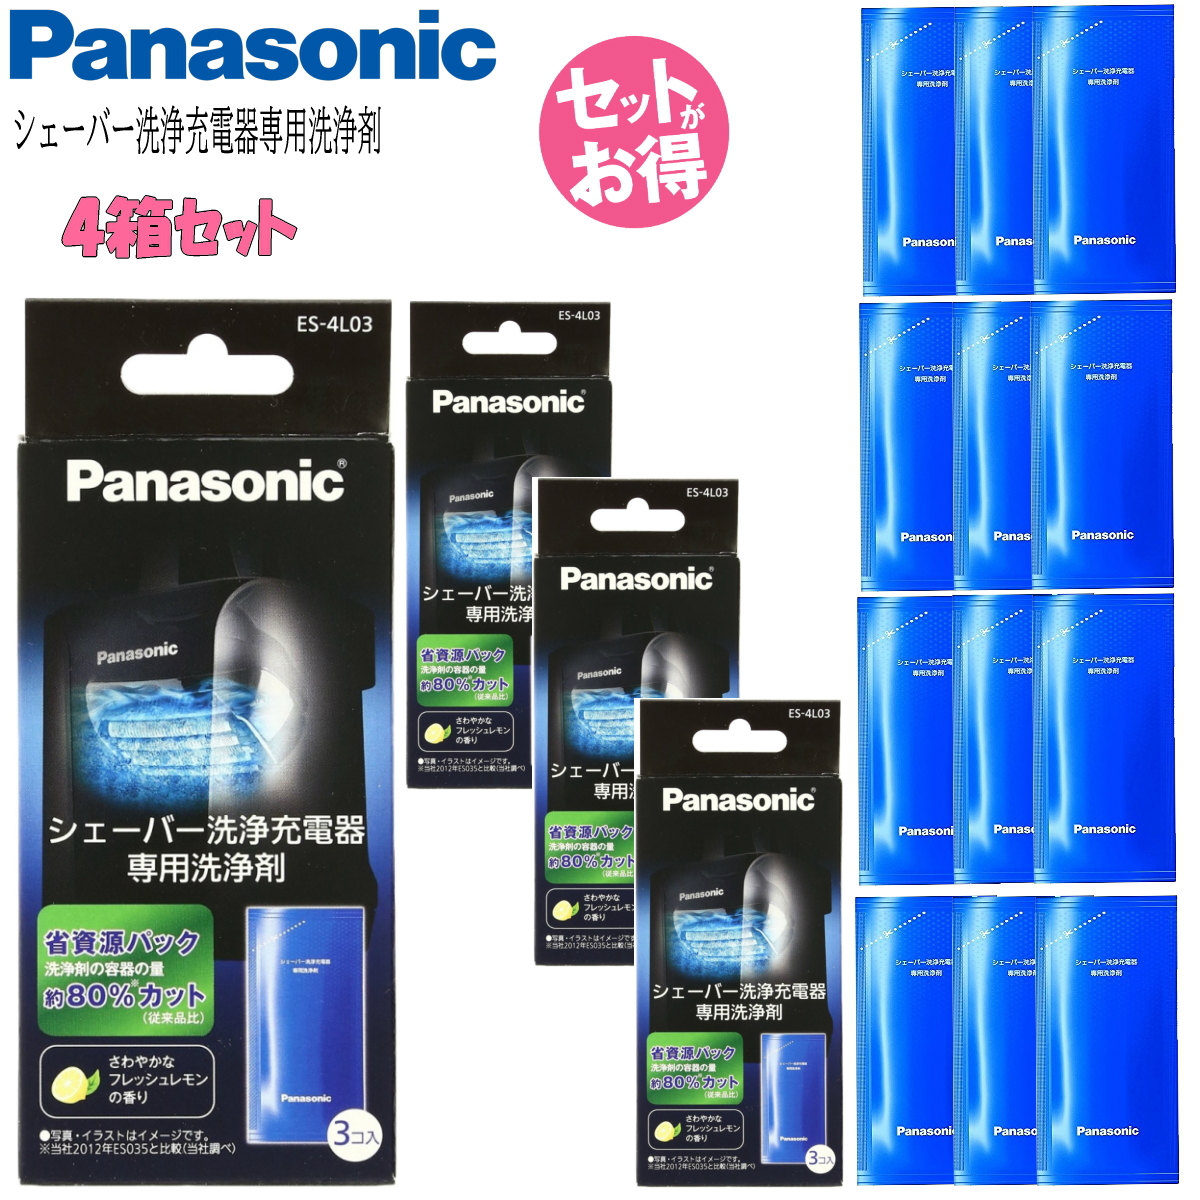 Panasonic パナソニック シェーバー洗浄充電器専用洗浄剤 ES-4L03 (1箱3個入り) 4箱セット